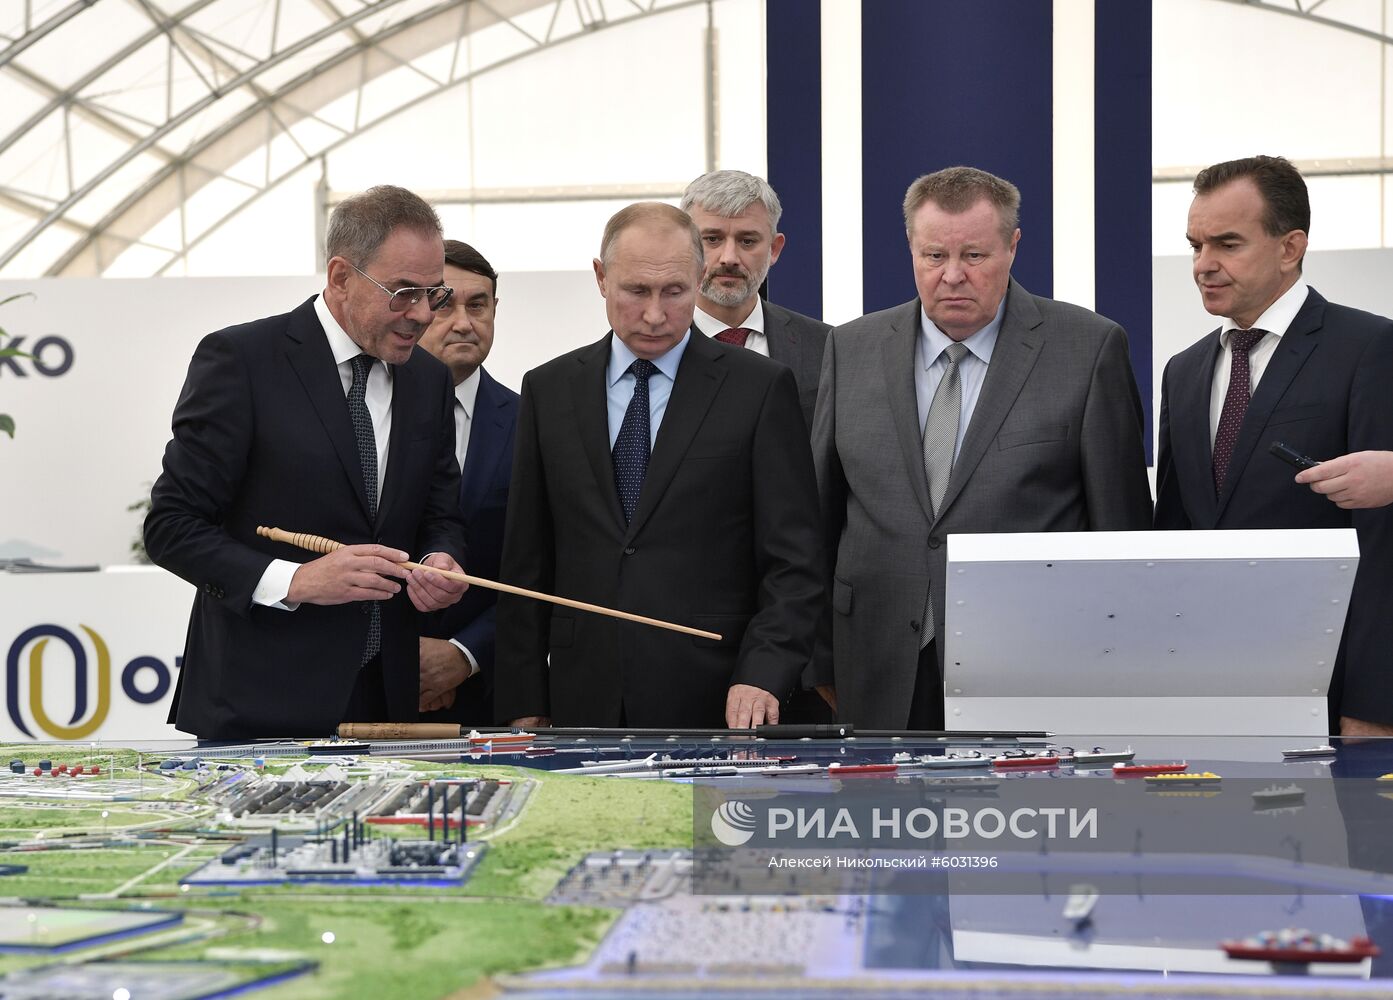 Рабочая поездка президента РФ В. Путина в Краснодарский край (Таманский полуостров)